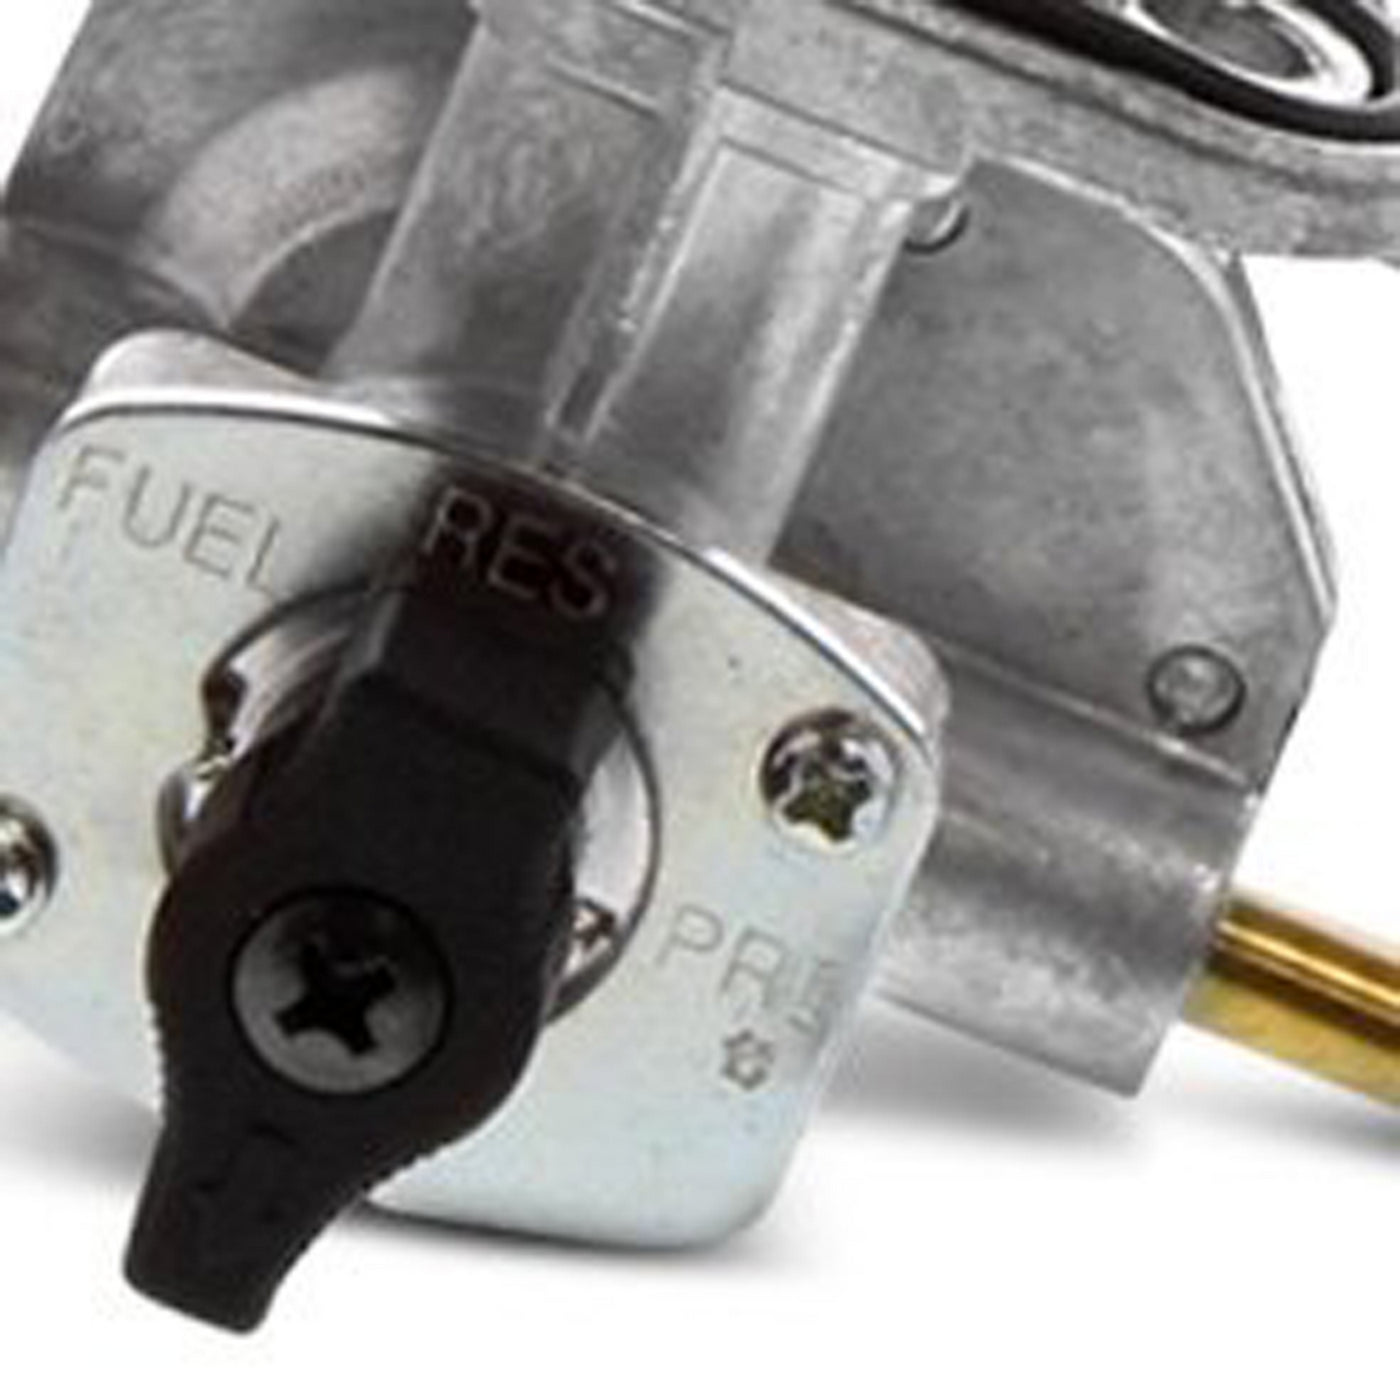 Fuel Star FS101-0172 Fuel Valve Kit #FS101-0172